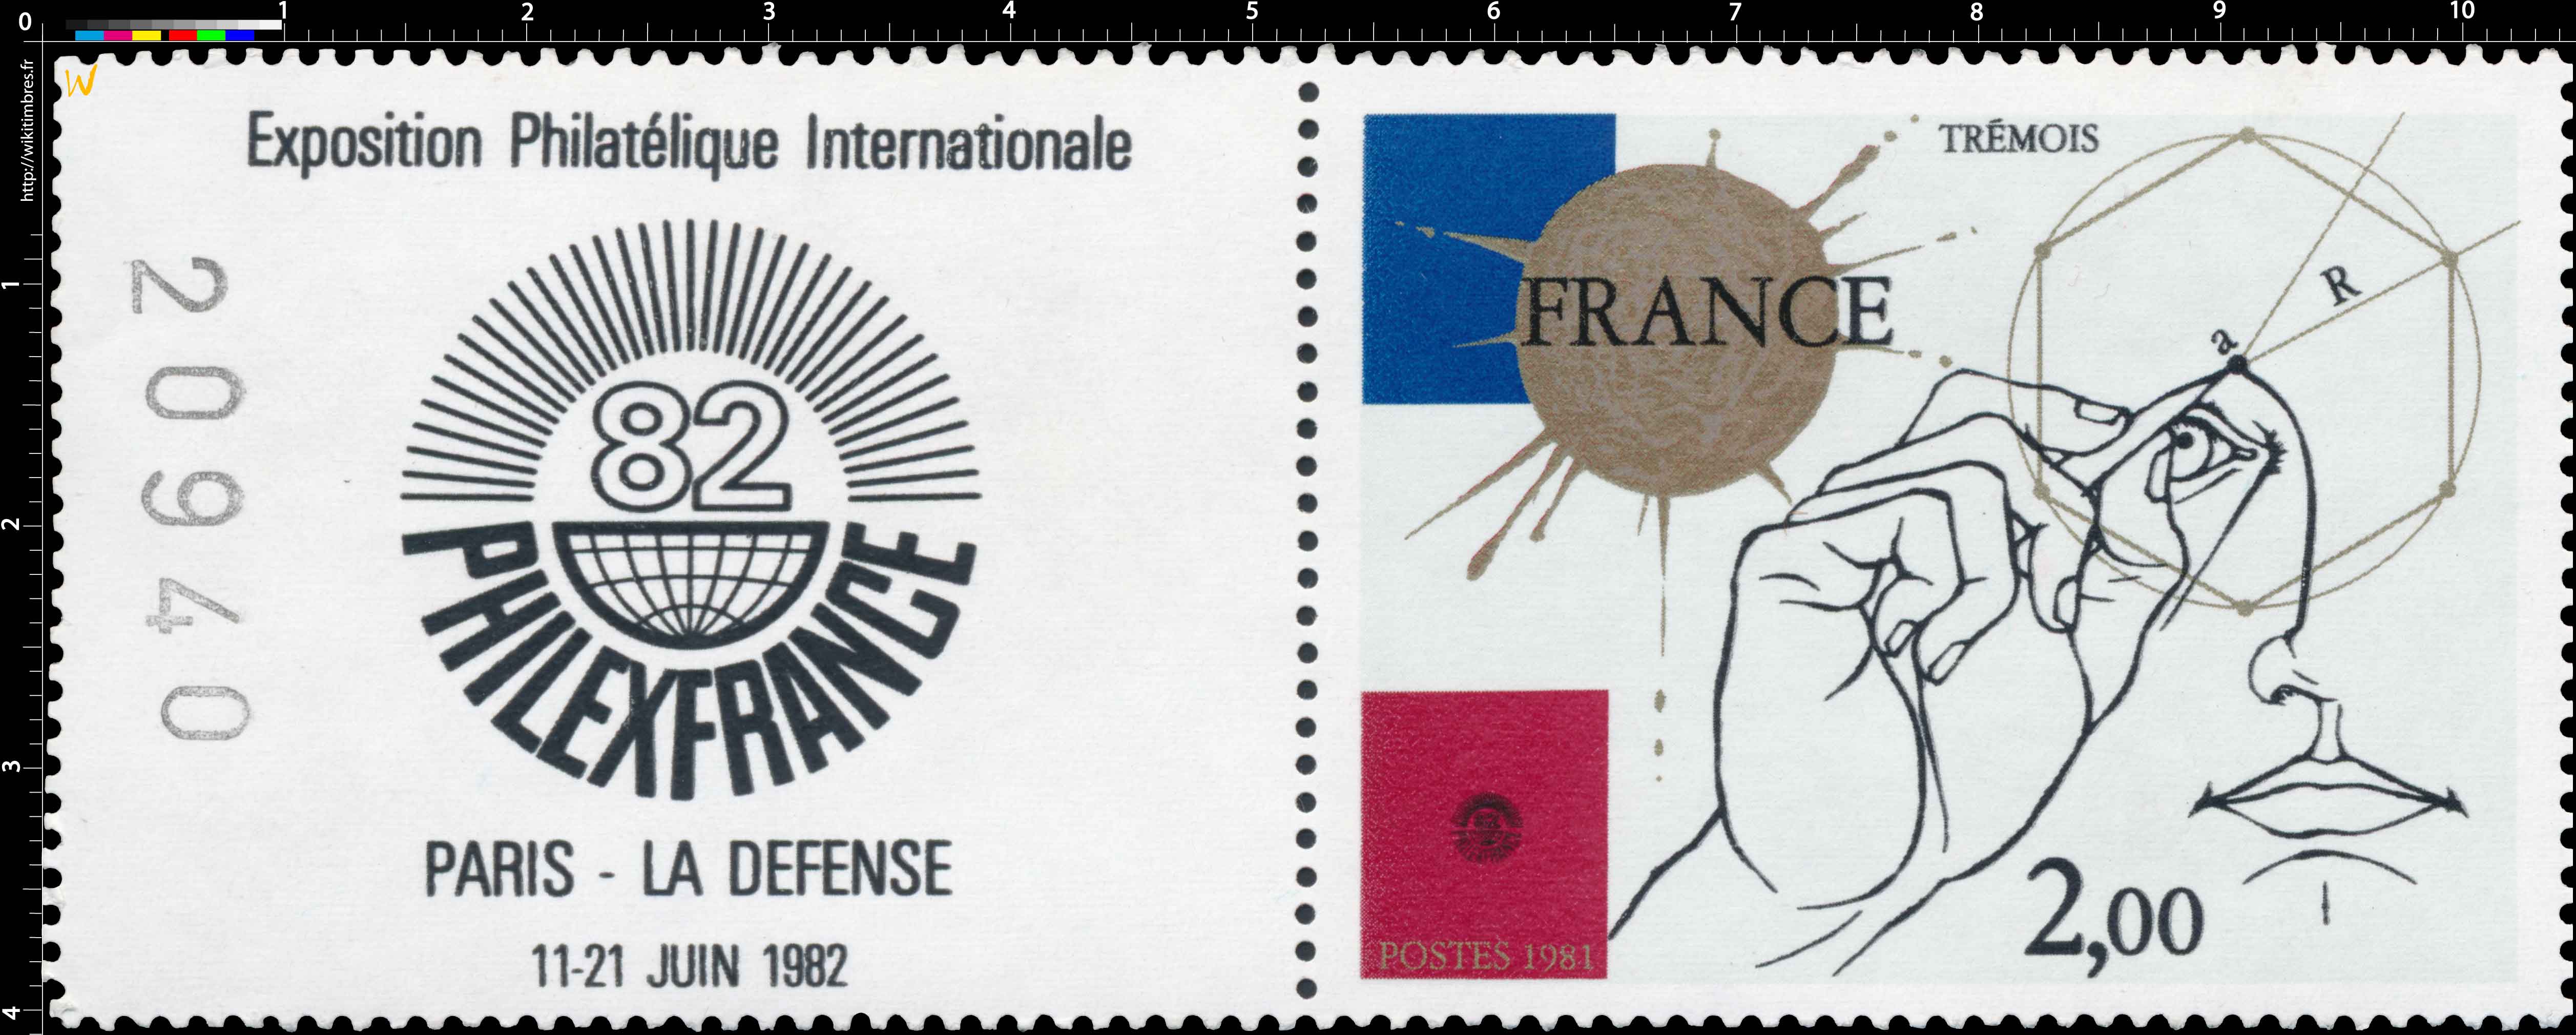 1981 PHILEXFRANCE 82 Exposition Philatélique Internationale PARIS LA DÉFENSE 11-21 JUIN 1982 TRÉMOIS